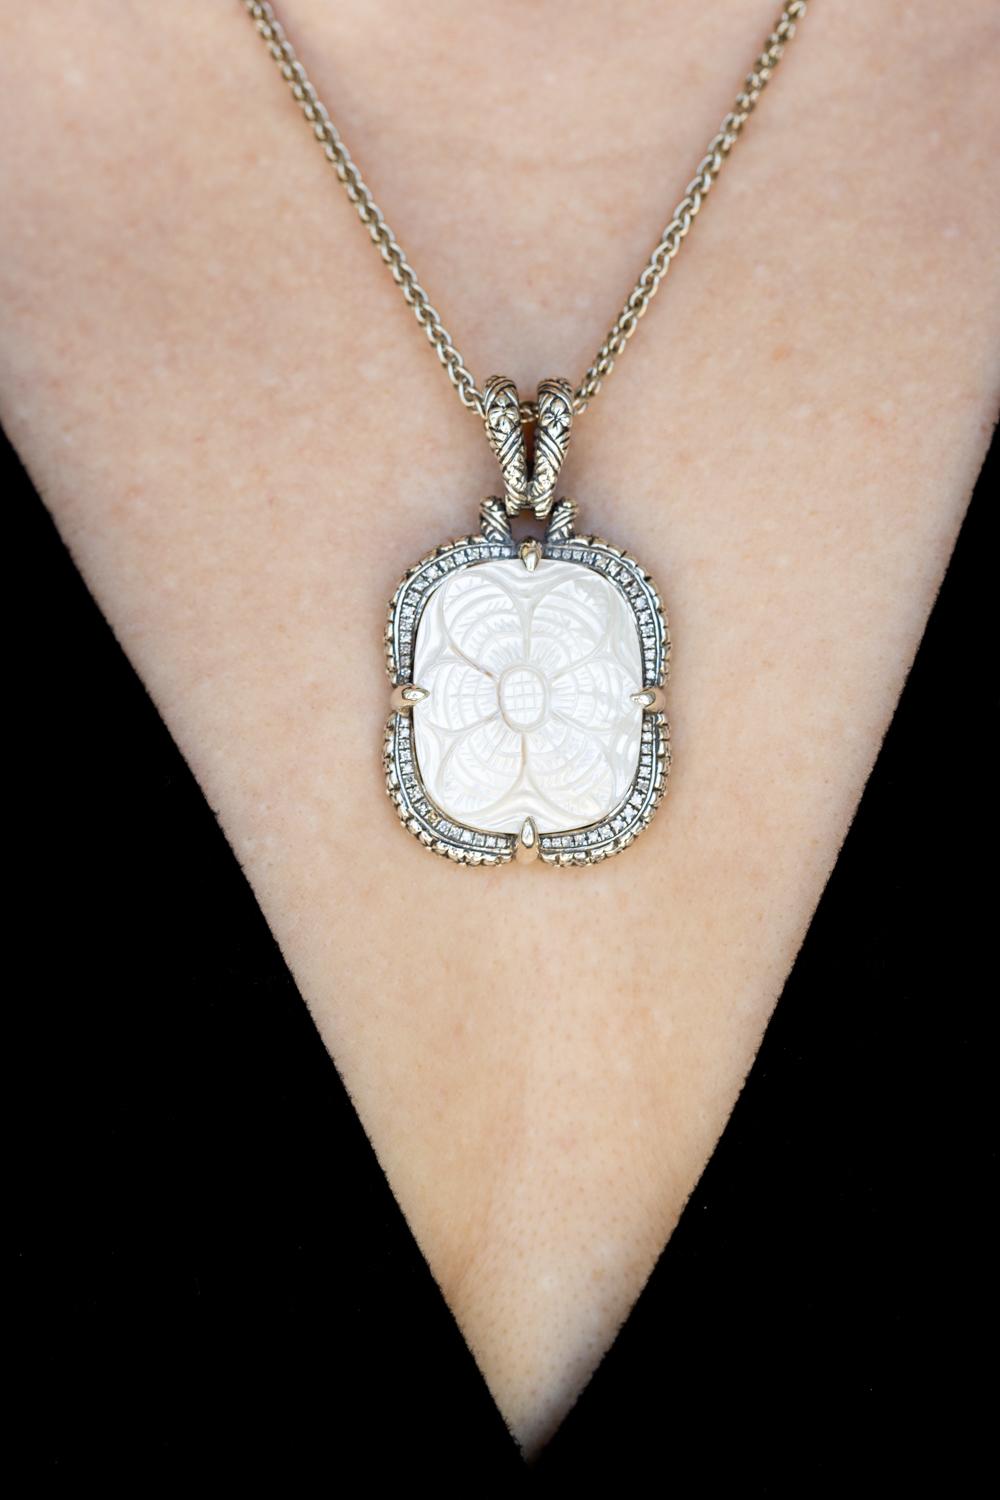 Die handgeschnitzte Perlmutter-Halskette von Stephen Dweck ist ein exquisites Beispiel für feine Handwerkskunst. Der aus Sterlingsilber gefertigte Anhänger zeichnet sich durch aufwändige Schnitzereien auf dem schimmernden Perlmutt aus, die durch